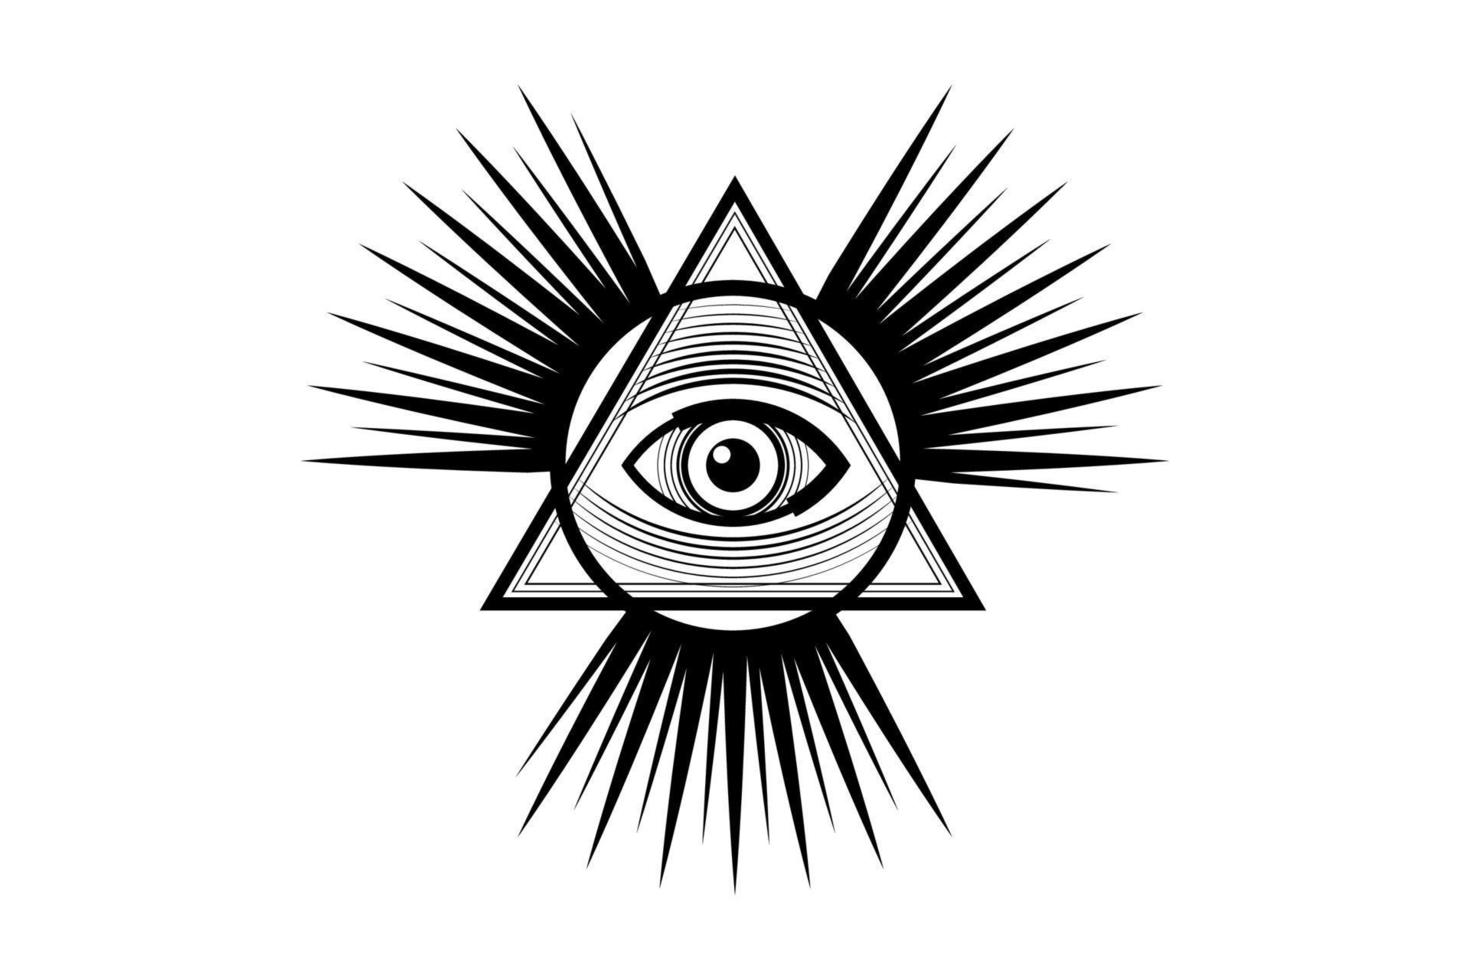 symbole maçonnique sacré. tout œil qui voit, le troisième œil, l'œil de la providence, à l'intérieur de la pyramide triangulaire. nouvel ordre mondial. icône noire alchimie, religion, spiritualité, occultisme. vecteur isolé ou blanc